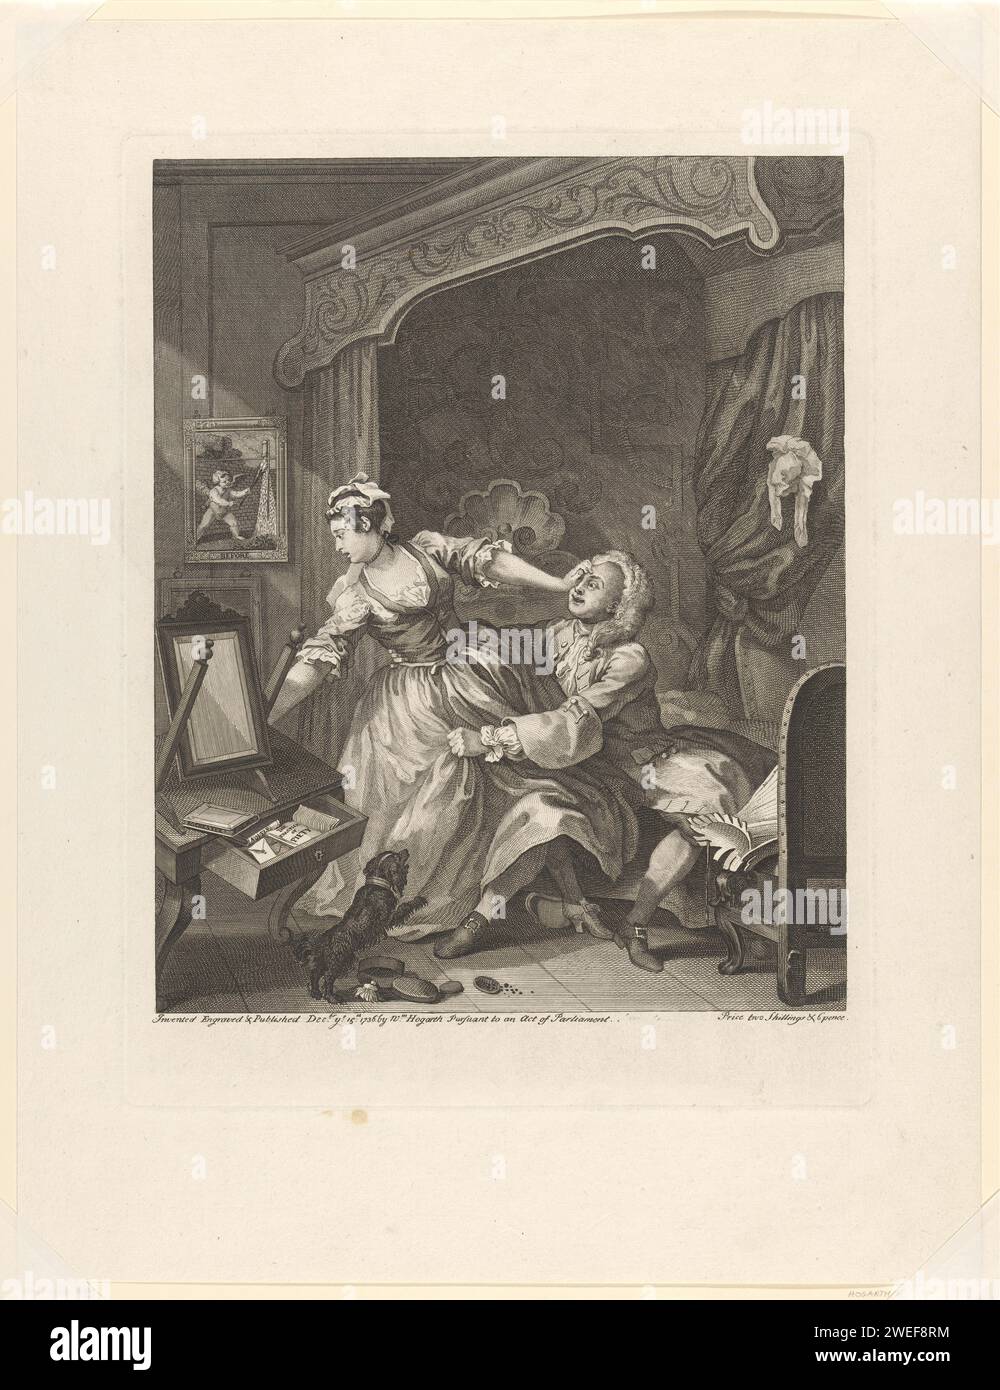 « Avant », William Hogarth, 1736 imprime le contenu dans le tiroir de la table de chevet qui tombe et le chien aux pieds de la femme indique une chasteté et une moralité chancelantes. Dans le tableau à côté de la canopée, Cupido pose une fusée pour illustrer ce qui est à venir. La femme semble repousser l'homme, mais s'est déjà dépouillée de son corset, qui se trouve sur la chaise à l'extrémité du pied. Papier gravure / gravure histoire d'amour infructueuse ; séduction. chasteté versus sensualité. courtise unilatérale ; poursuite ; choix difficile Banque D'Images